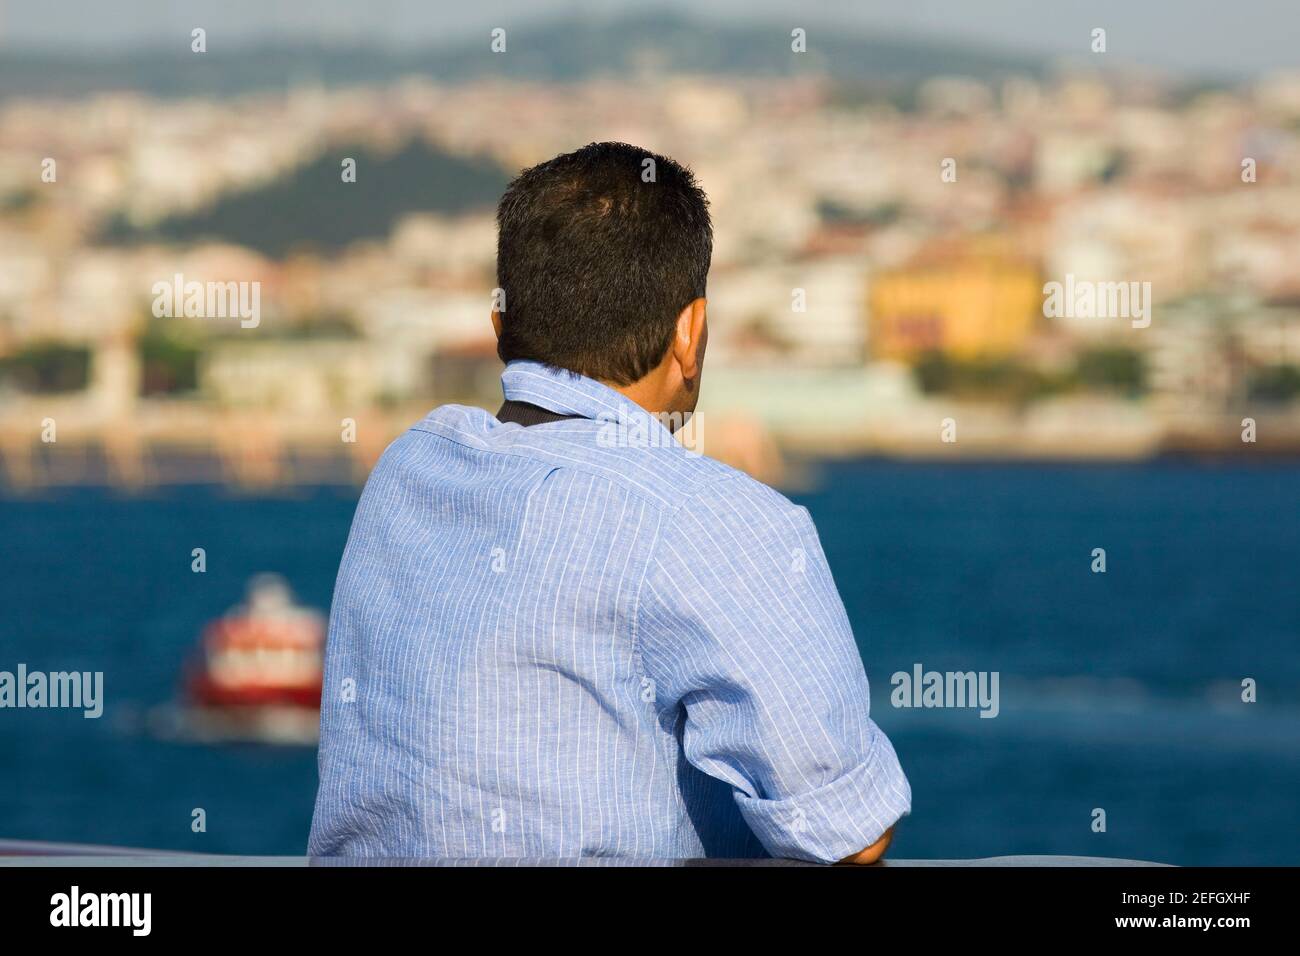 Vue arrière d'un homme mûr regardant une vue, Athènes, Grèce Banque D'Images